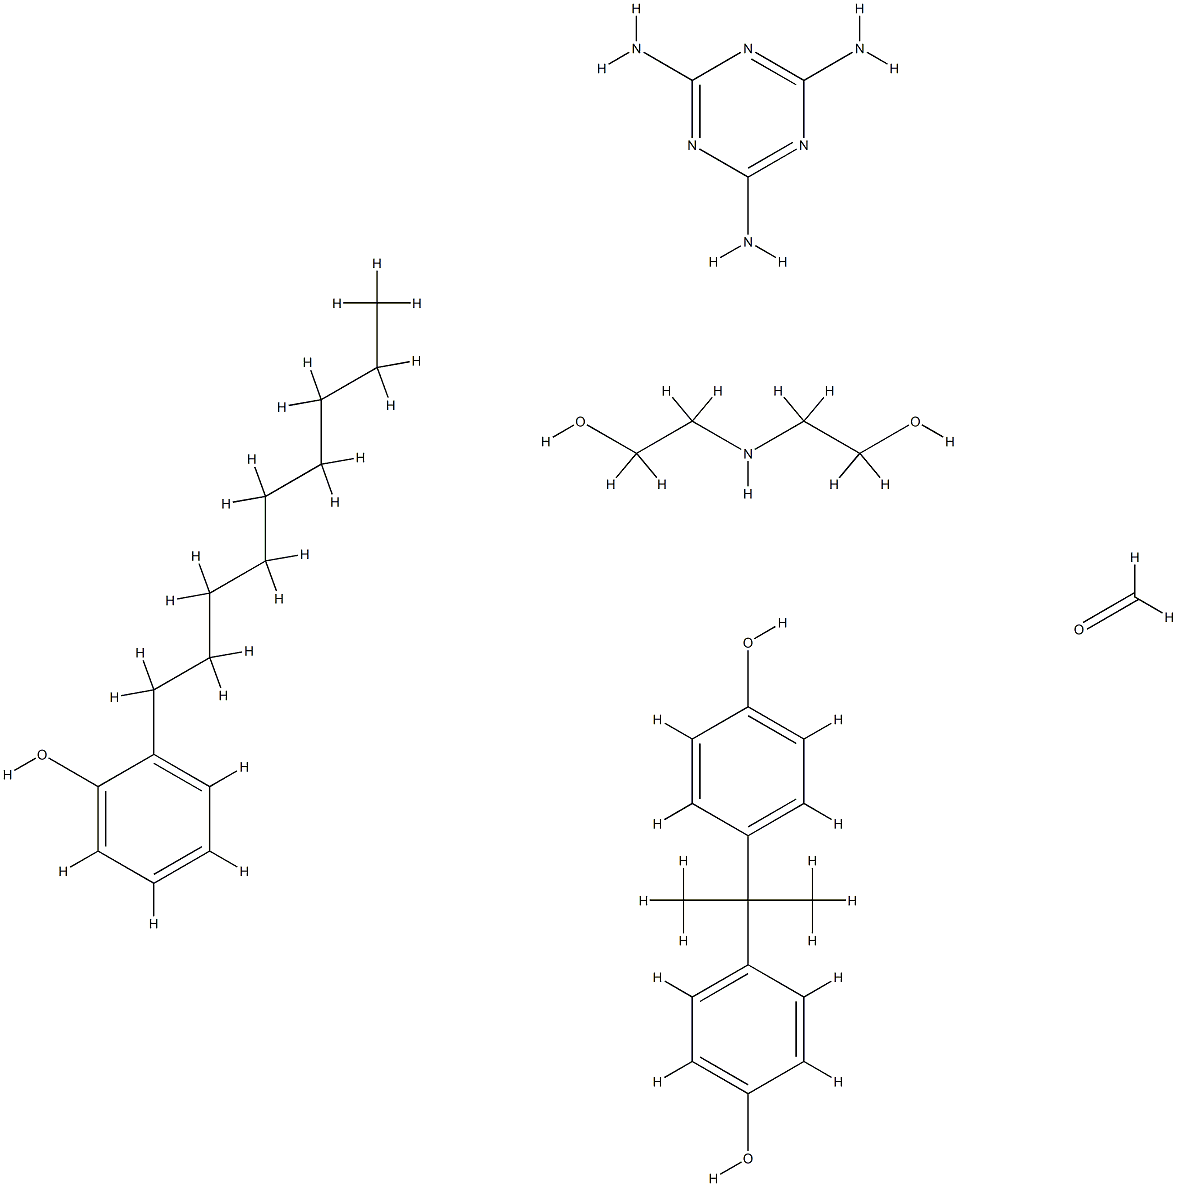 72121-75-6 Formaldehyde, polymer with 2,2'-iminobis[ethanol], 4,4'-(1-methylethylidene)bis[phenol], nonylphenol and 1,3,5-triazine-2,4,6-triamine